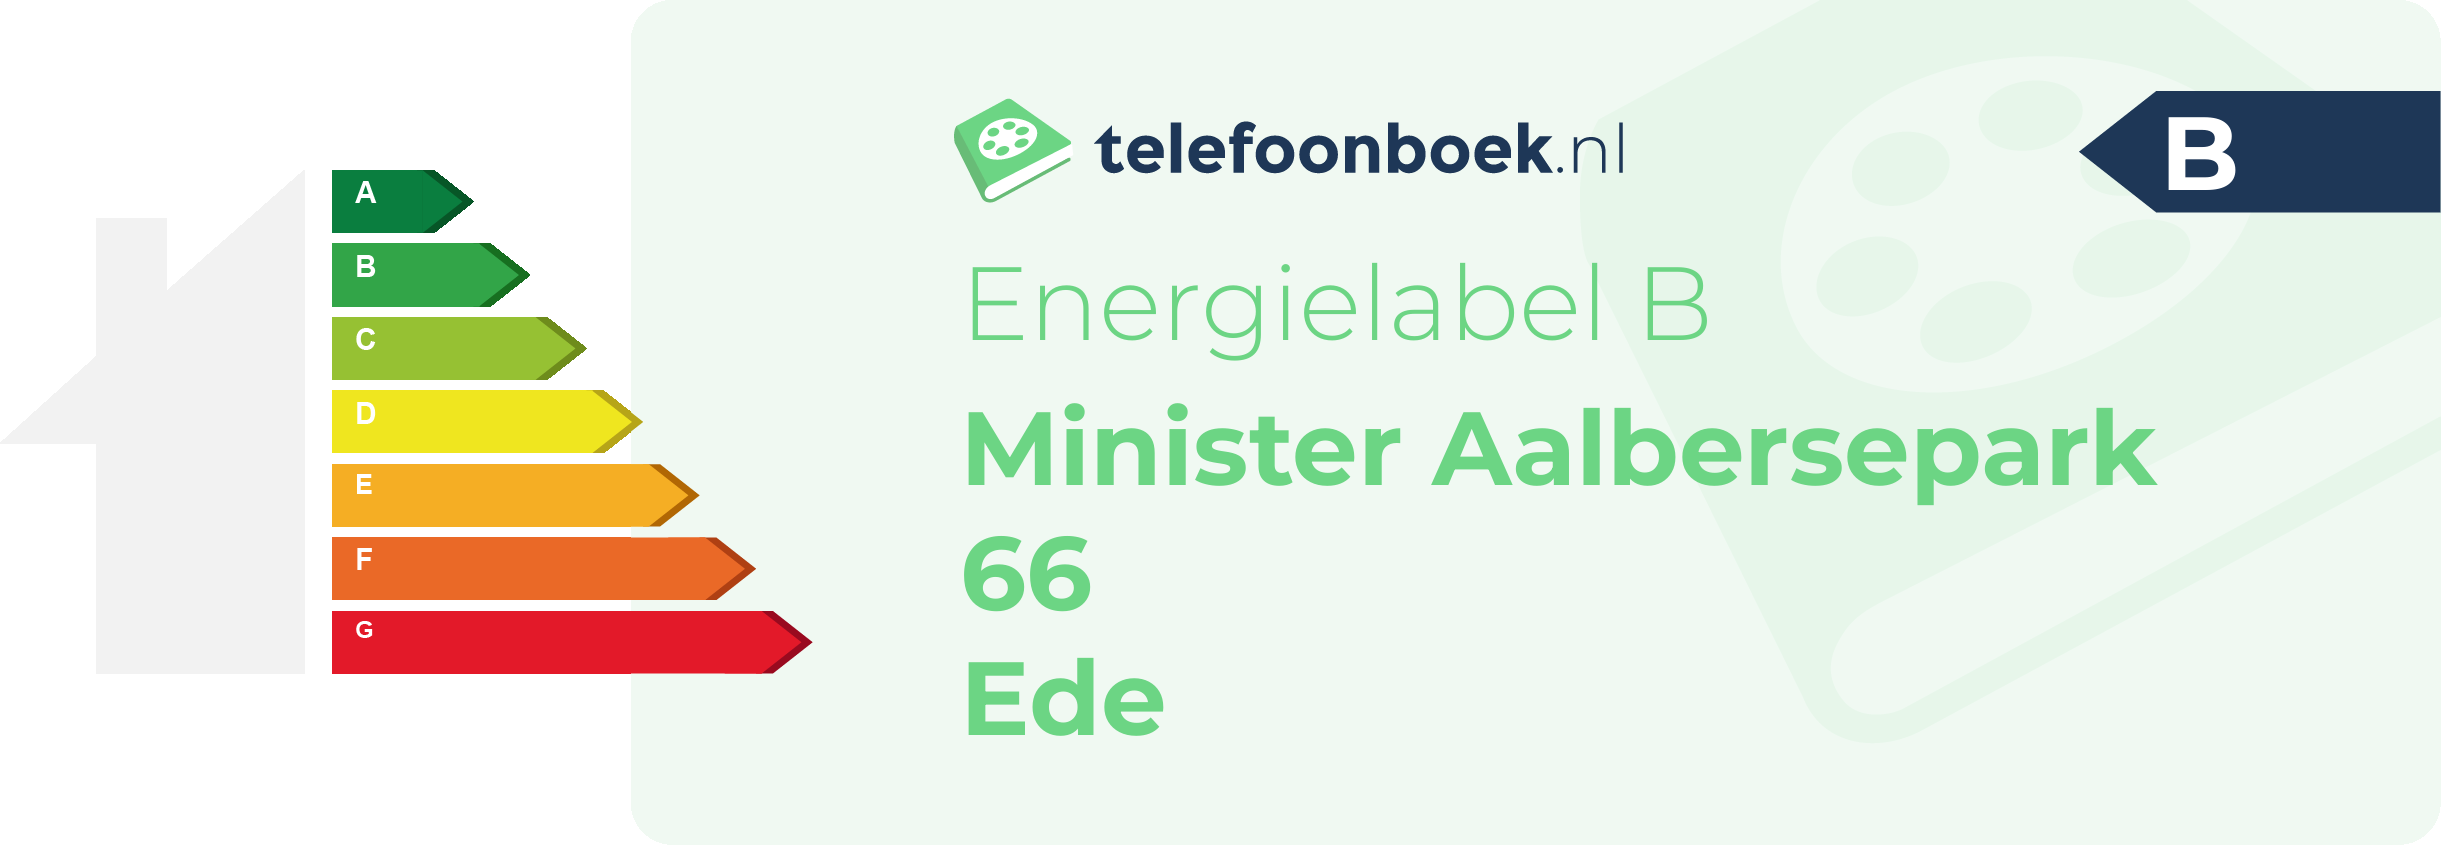 Energielabel Minister Aalbersepark 66 Ede